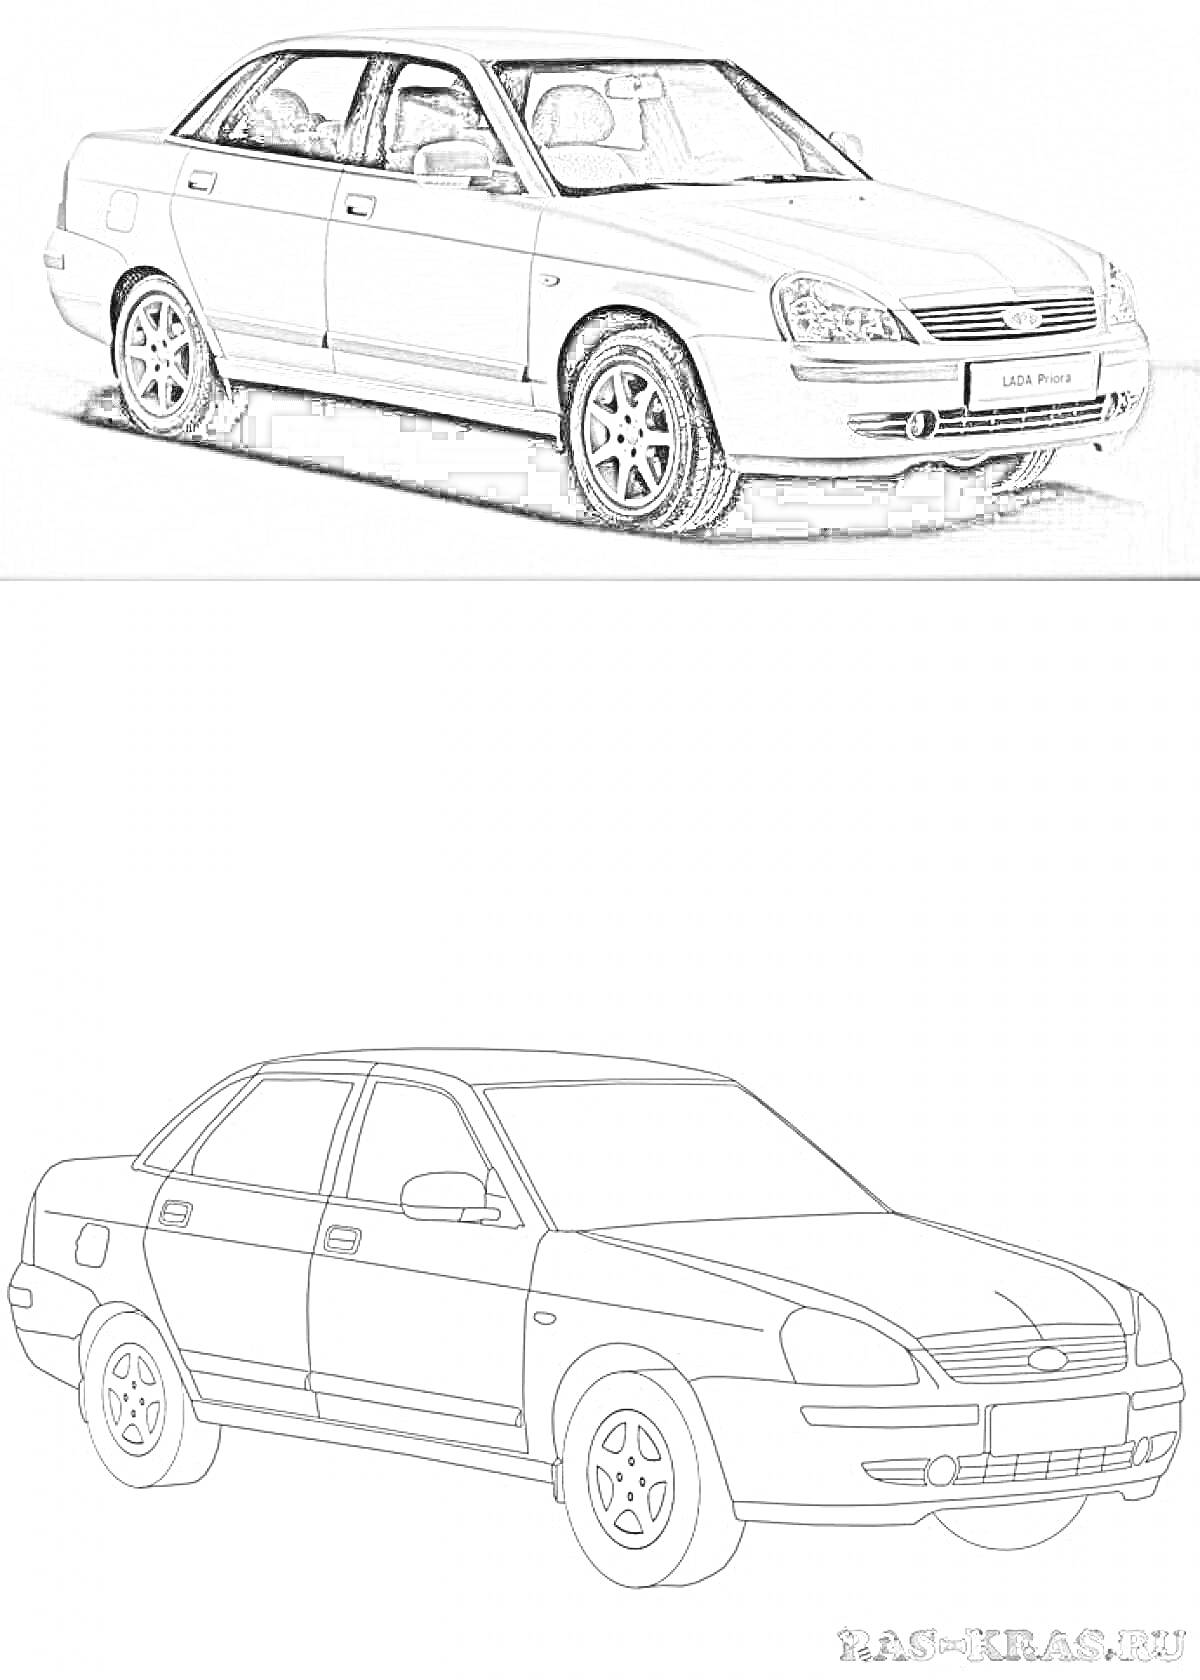 Раскраска Автомобиль Лада Приора седан, вид спереди и сбоку, на белом фоне